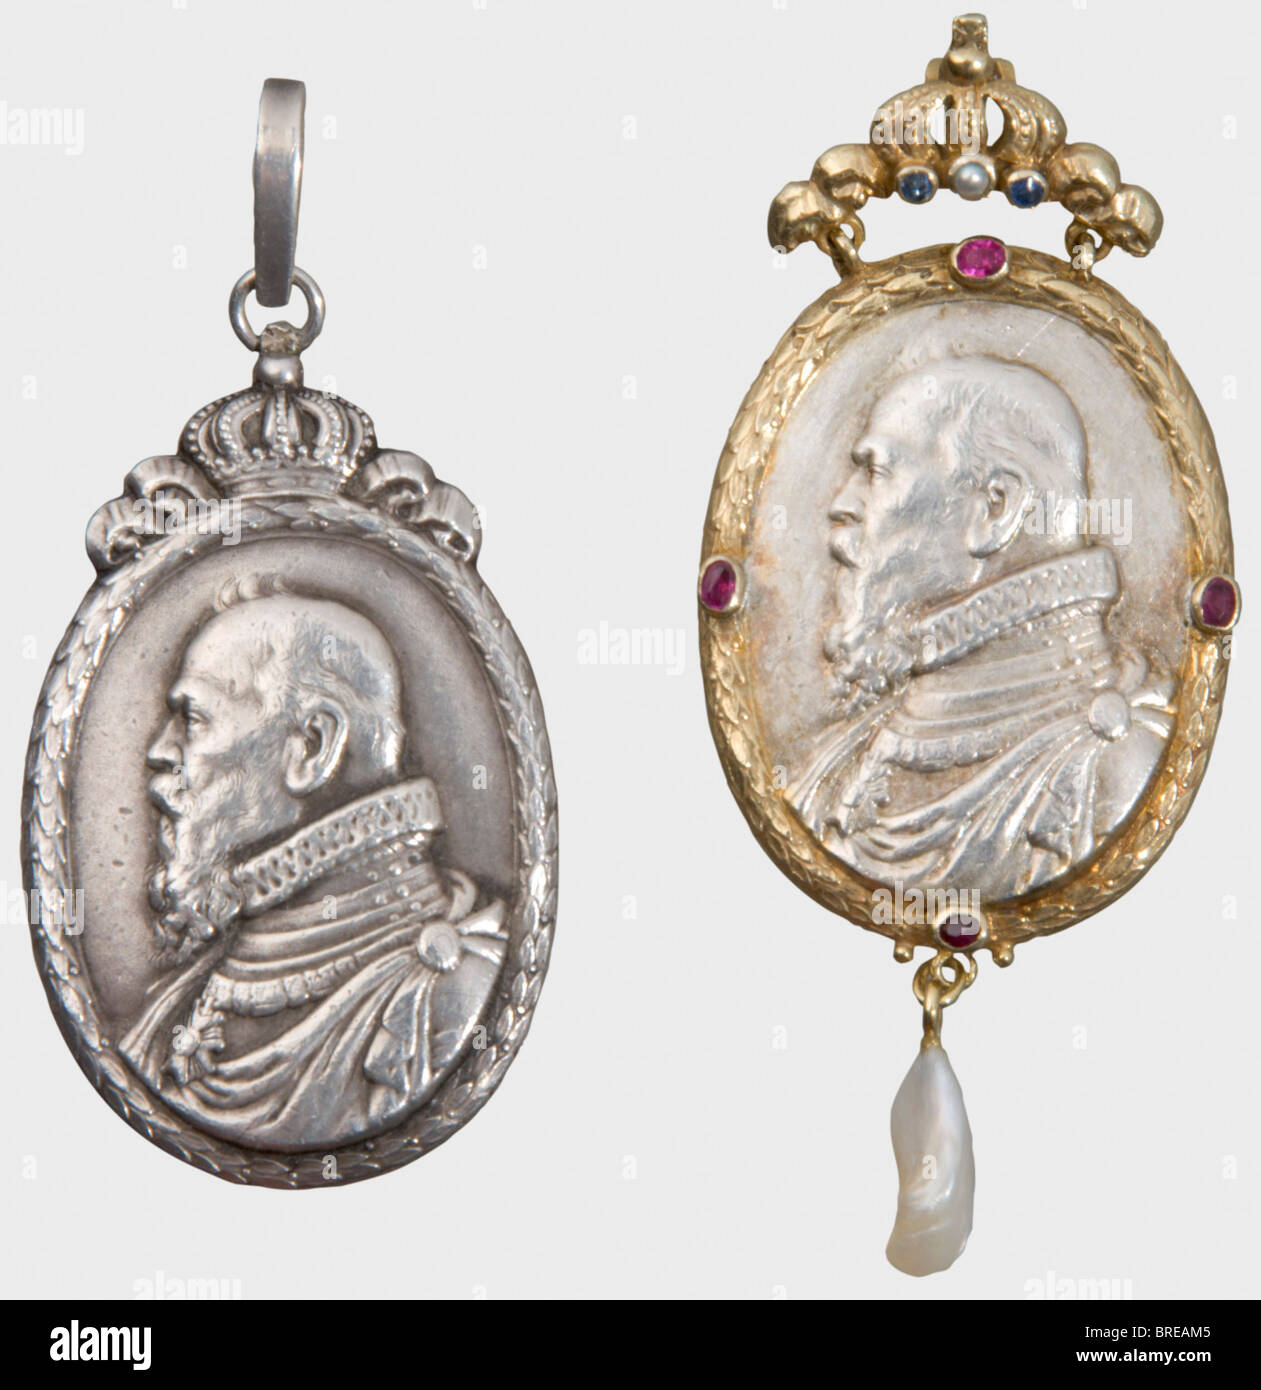 Prinzregent Luitpold von Bayern (181-1912), zwei silberne Medaillons ovales silbernes Medaillon, das ein Porträt des Prinzregenten in Renaissancekostüm nach links trägt, umgeben von einem bekrönten Lorbeerkranz. Auf dem Verso die Aufschrift "LVITPOLDUS PRINCEPS REG. REGIN BAV. NAT XII.-S.A. MDCCCXXI-DENAT. XII.XI.MCMXII'. Größe inkl. Öse 27 x 46 mm, Gewicht 20,88 g. Ein weiteres Medaillon im Stil eines "Gnadenpfennigs" mit demselben Porträt, wenn auch mit einem vergoldeten Lorbeerkranz und an einer Kronengrafe befestigt. Auf dem Kranz vier in Gold gesetzte Rubinen, der Kronzirklet, Stockfoto